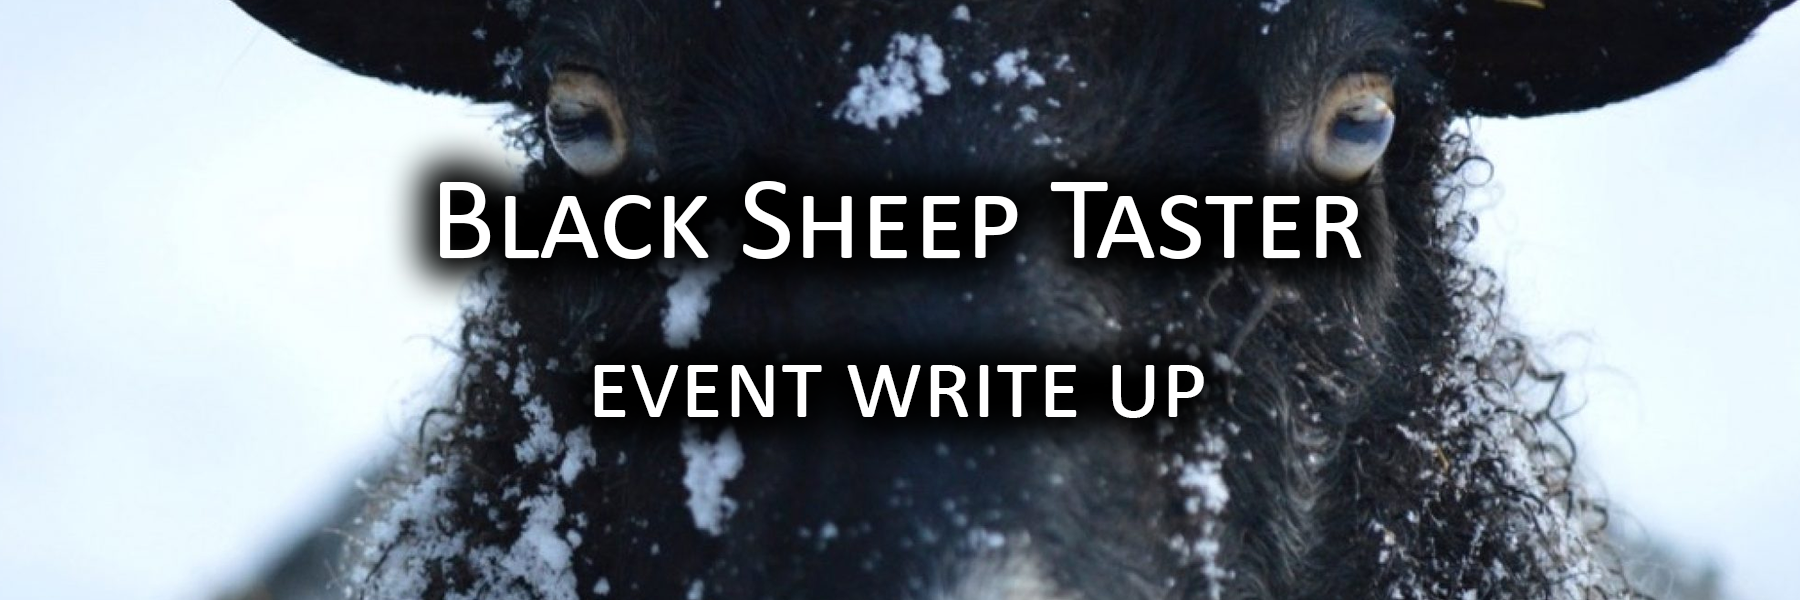 Black Sheep Taster writeup